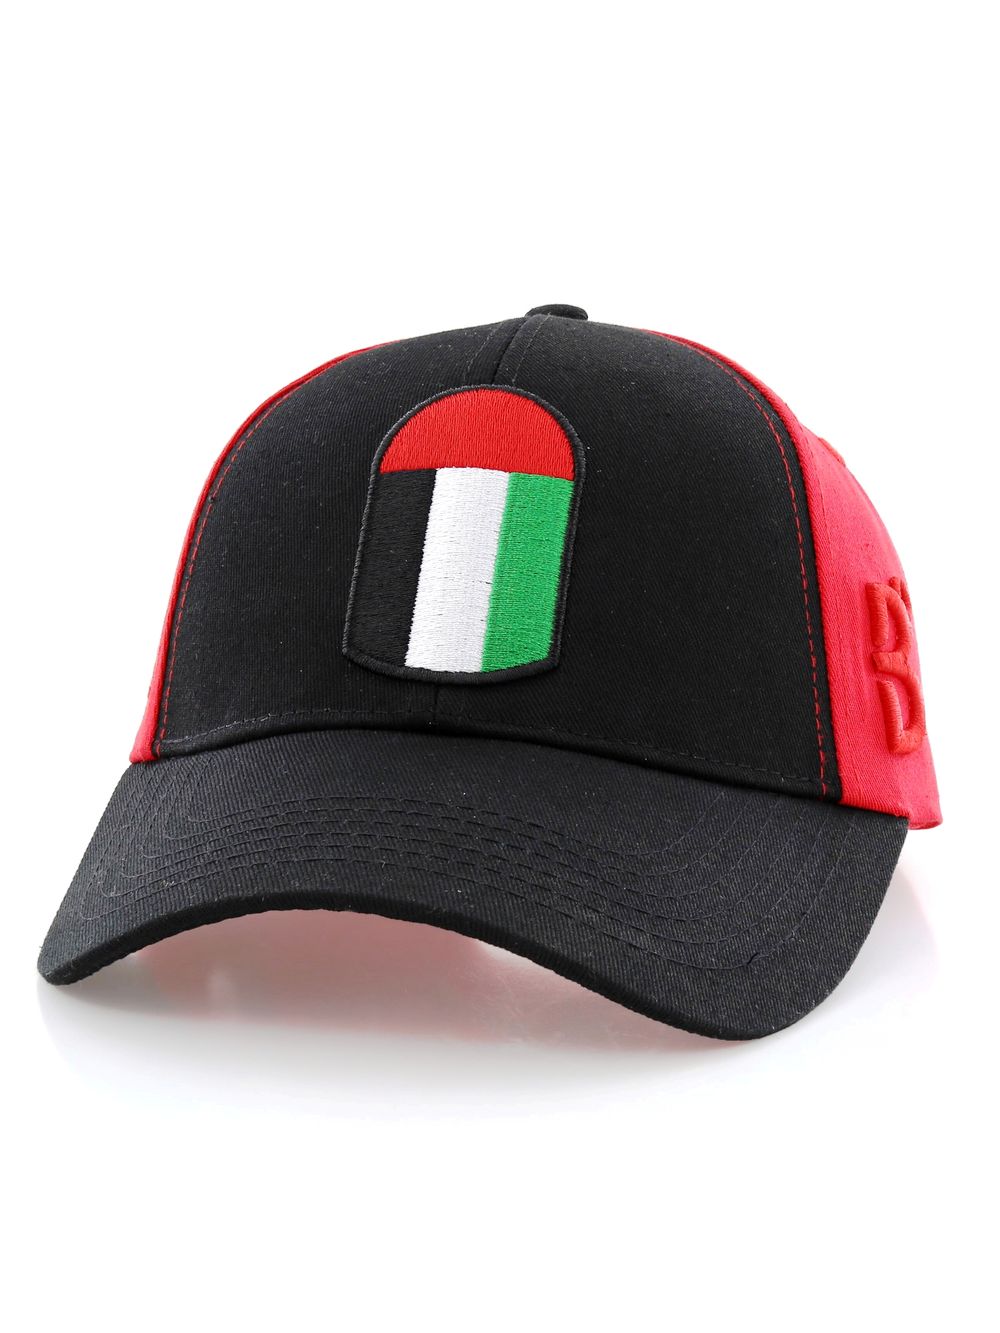 B360 B Proud UAE Unisex Cap Red/Black